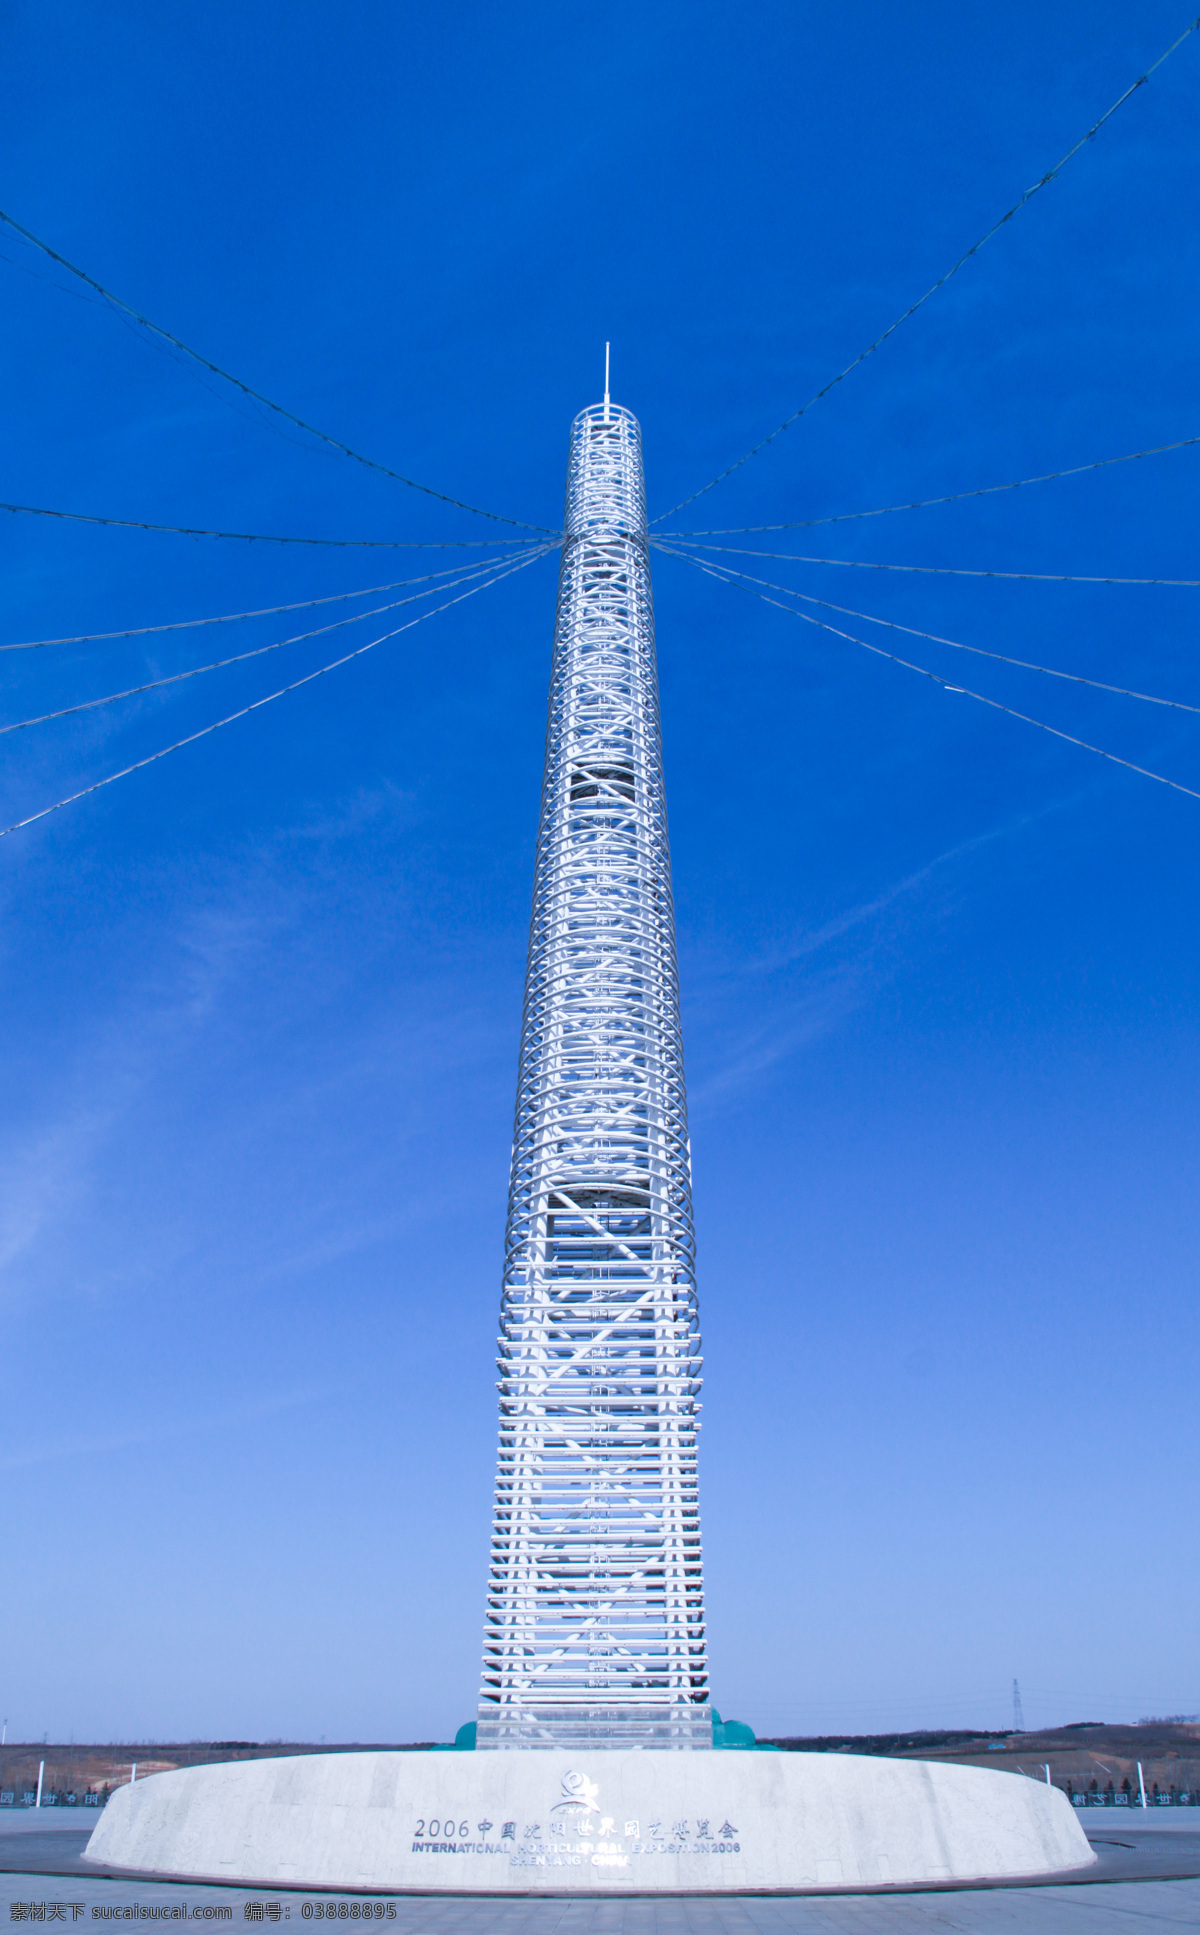 中国 沈阳 世界园艺博览会 塔式建筑 石碑 蓝天 白云 通信设备 工业生产 现代科技